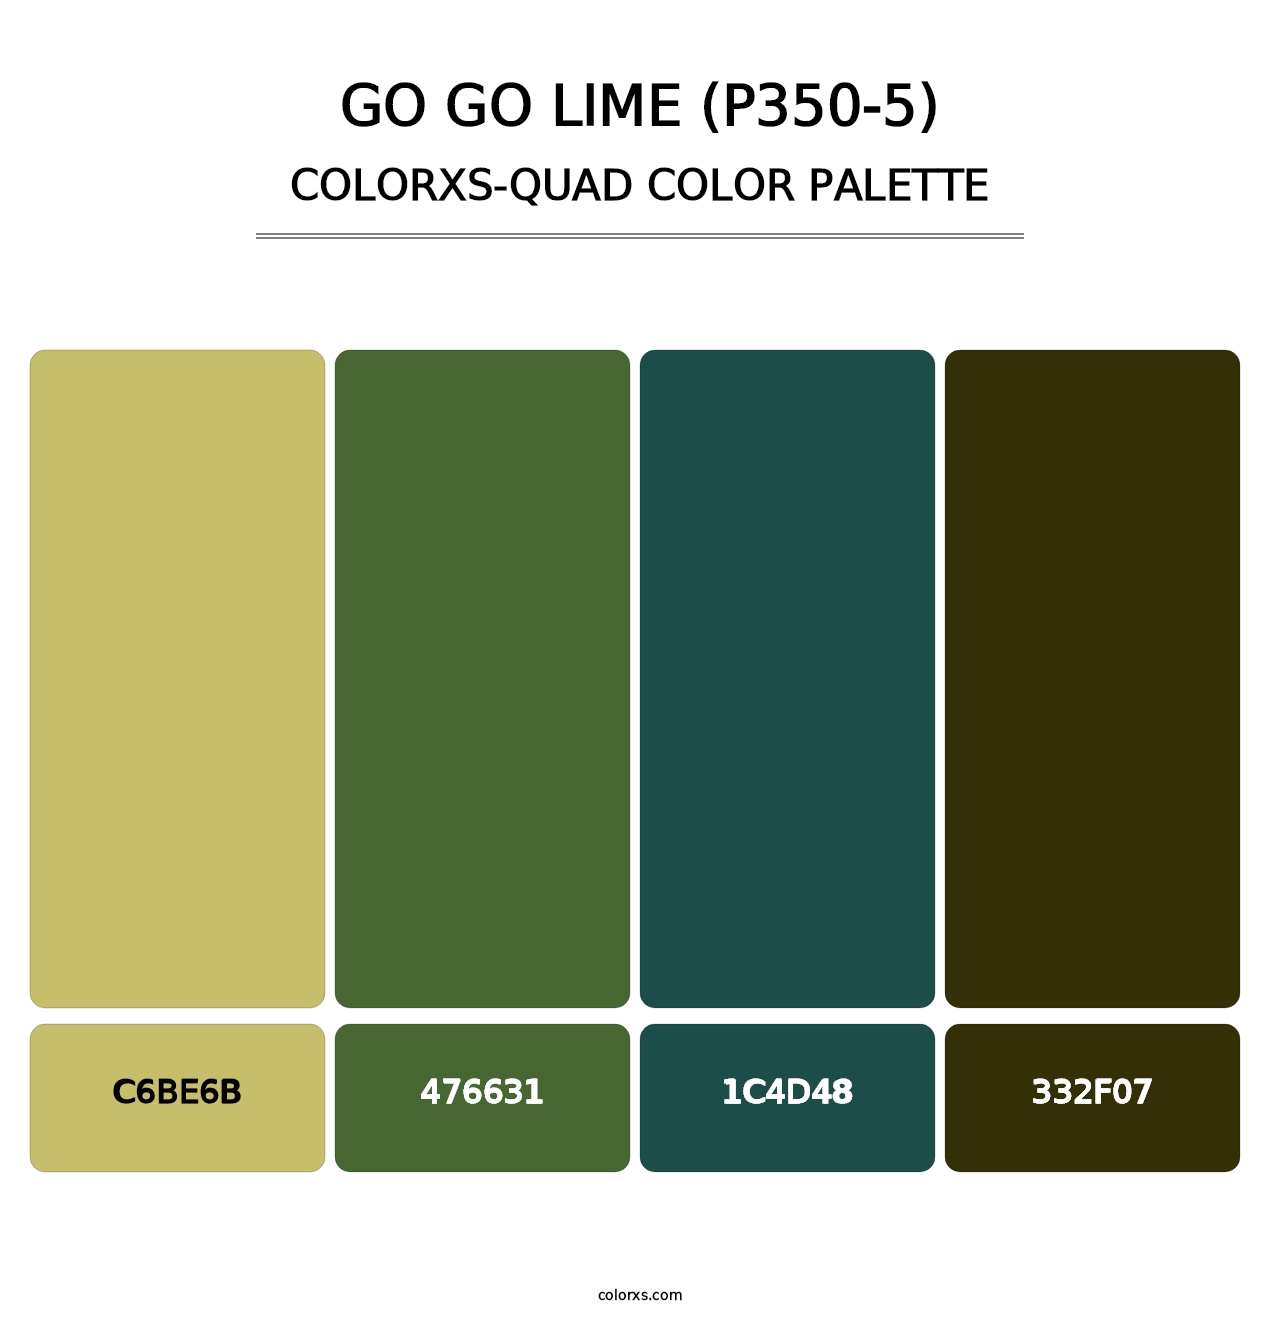 Go Go Lime (P350-5) - Colorxs Quad Palette